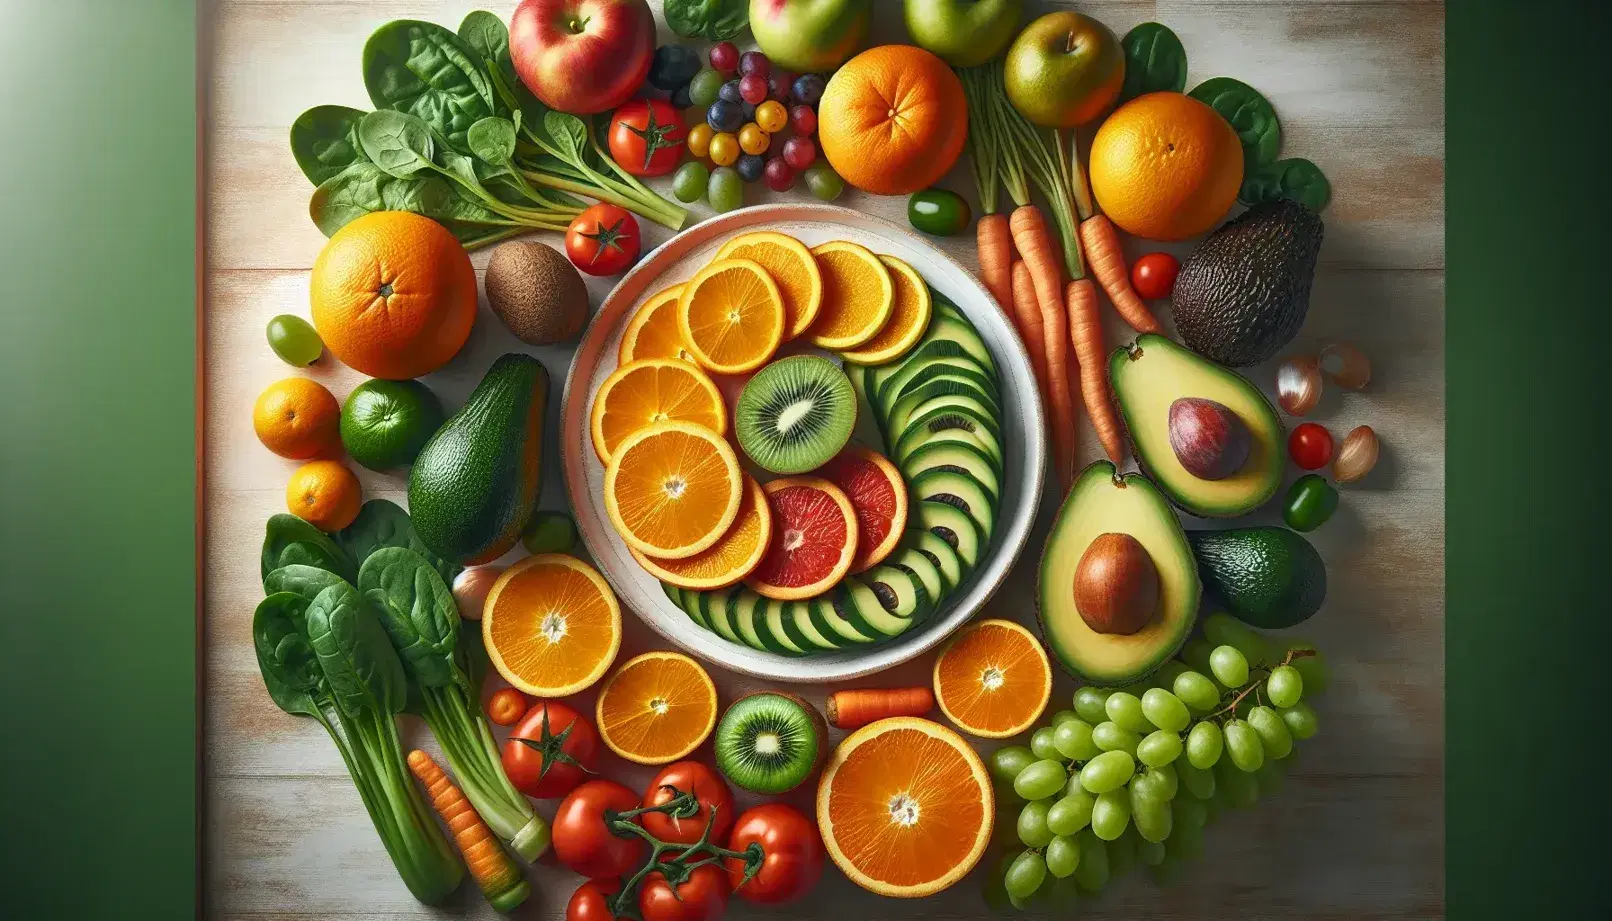 Variedad de frutas y verduras frescas en superficie de madera, con plato de alimentos cortados, naranjas en espiral, uvas verdes, espinacas, tomate, aguacate y zanahoria en rodajas.